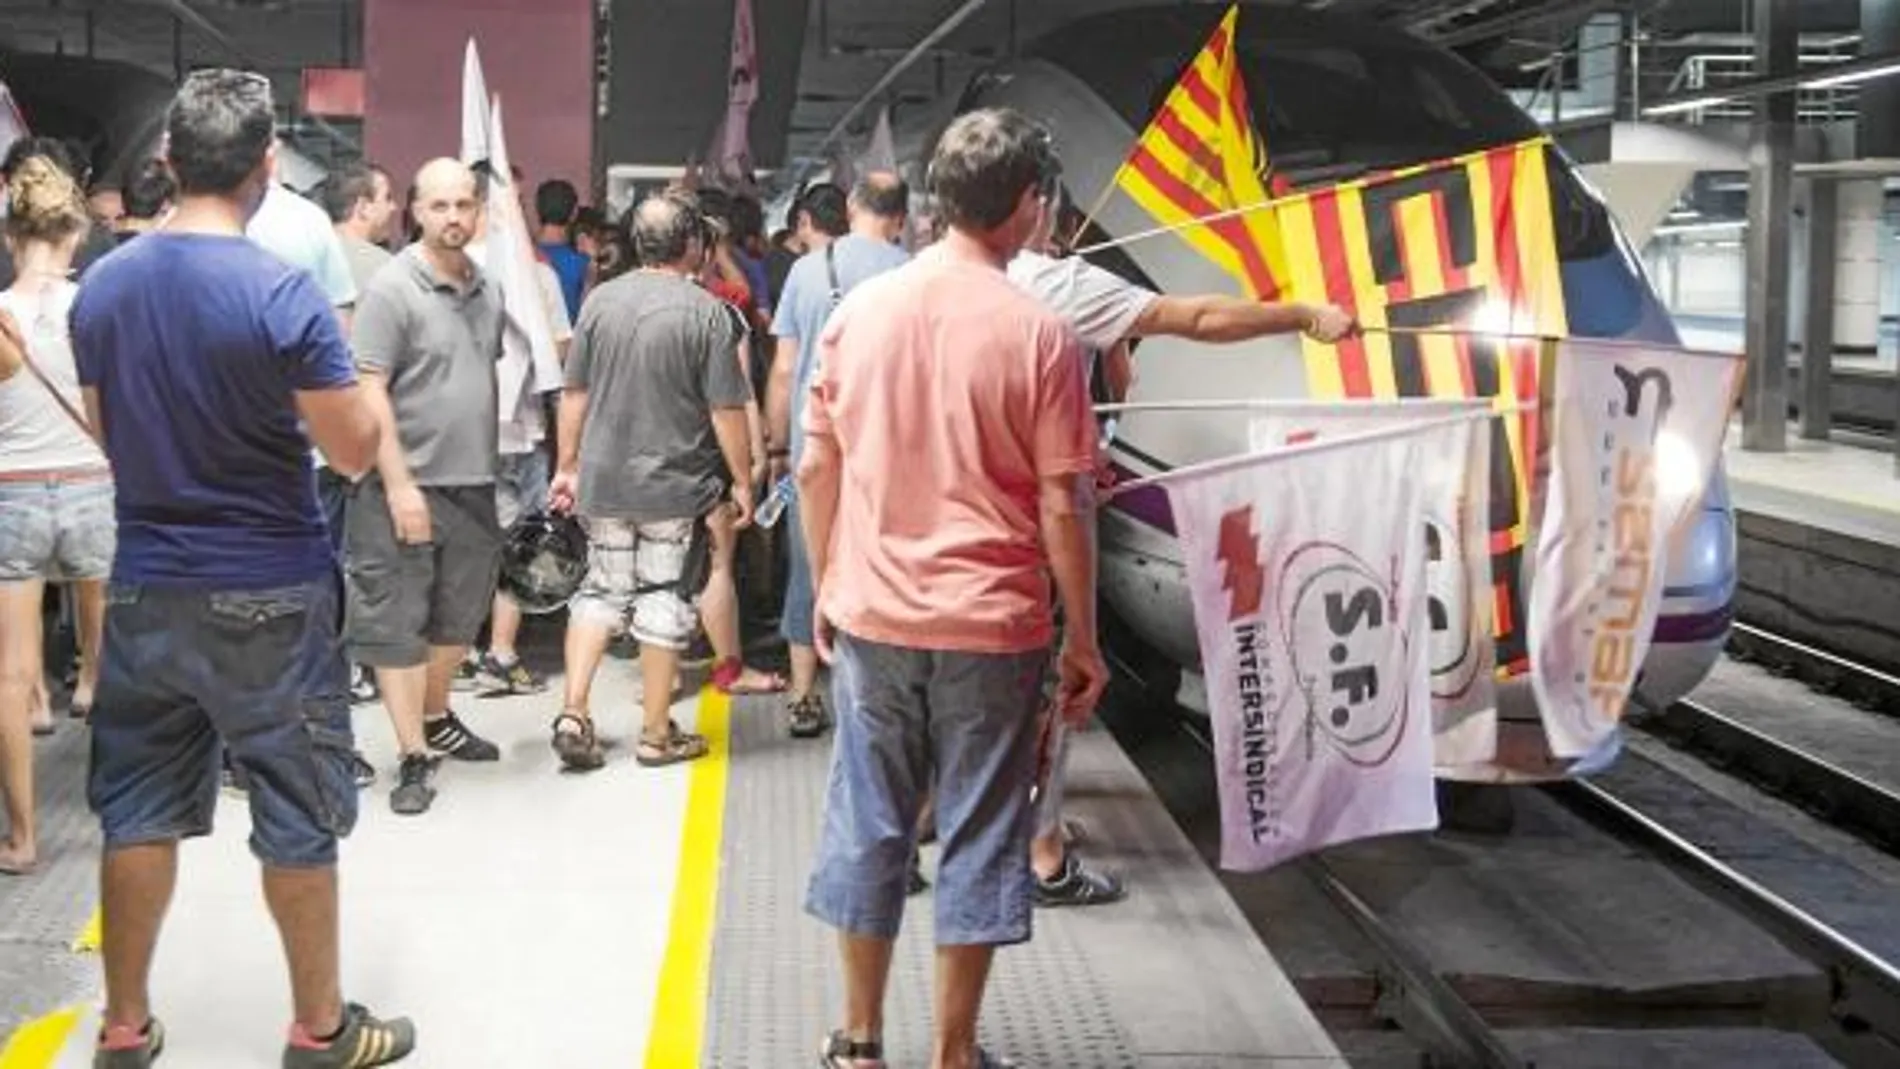 Los huelguistas intentaron boicotear la salida de trenes en la estación de Sants